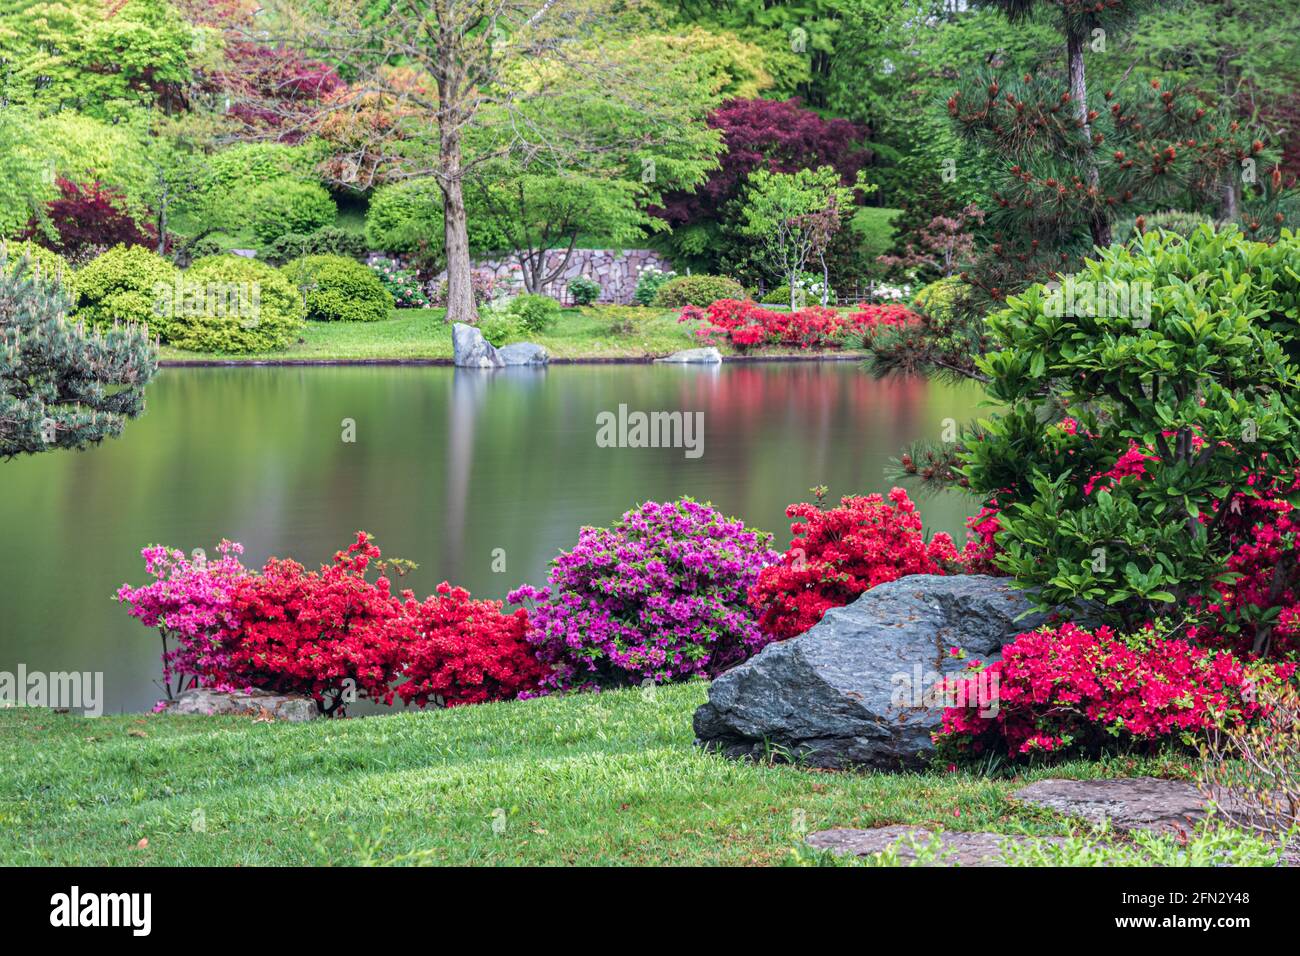 Japanischer Garten, in Missouri Botanical Garden, St. Louis, Missouri, USA. Spiegelung von Bäumen und Pflanzen im See. Rote und rosa Blüten säumen das Ufer. Stockfoto